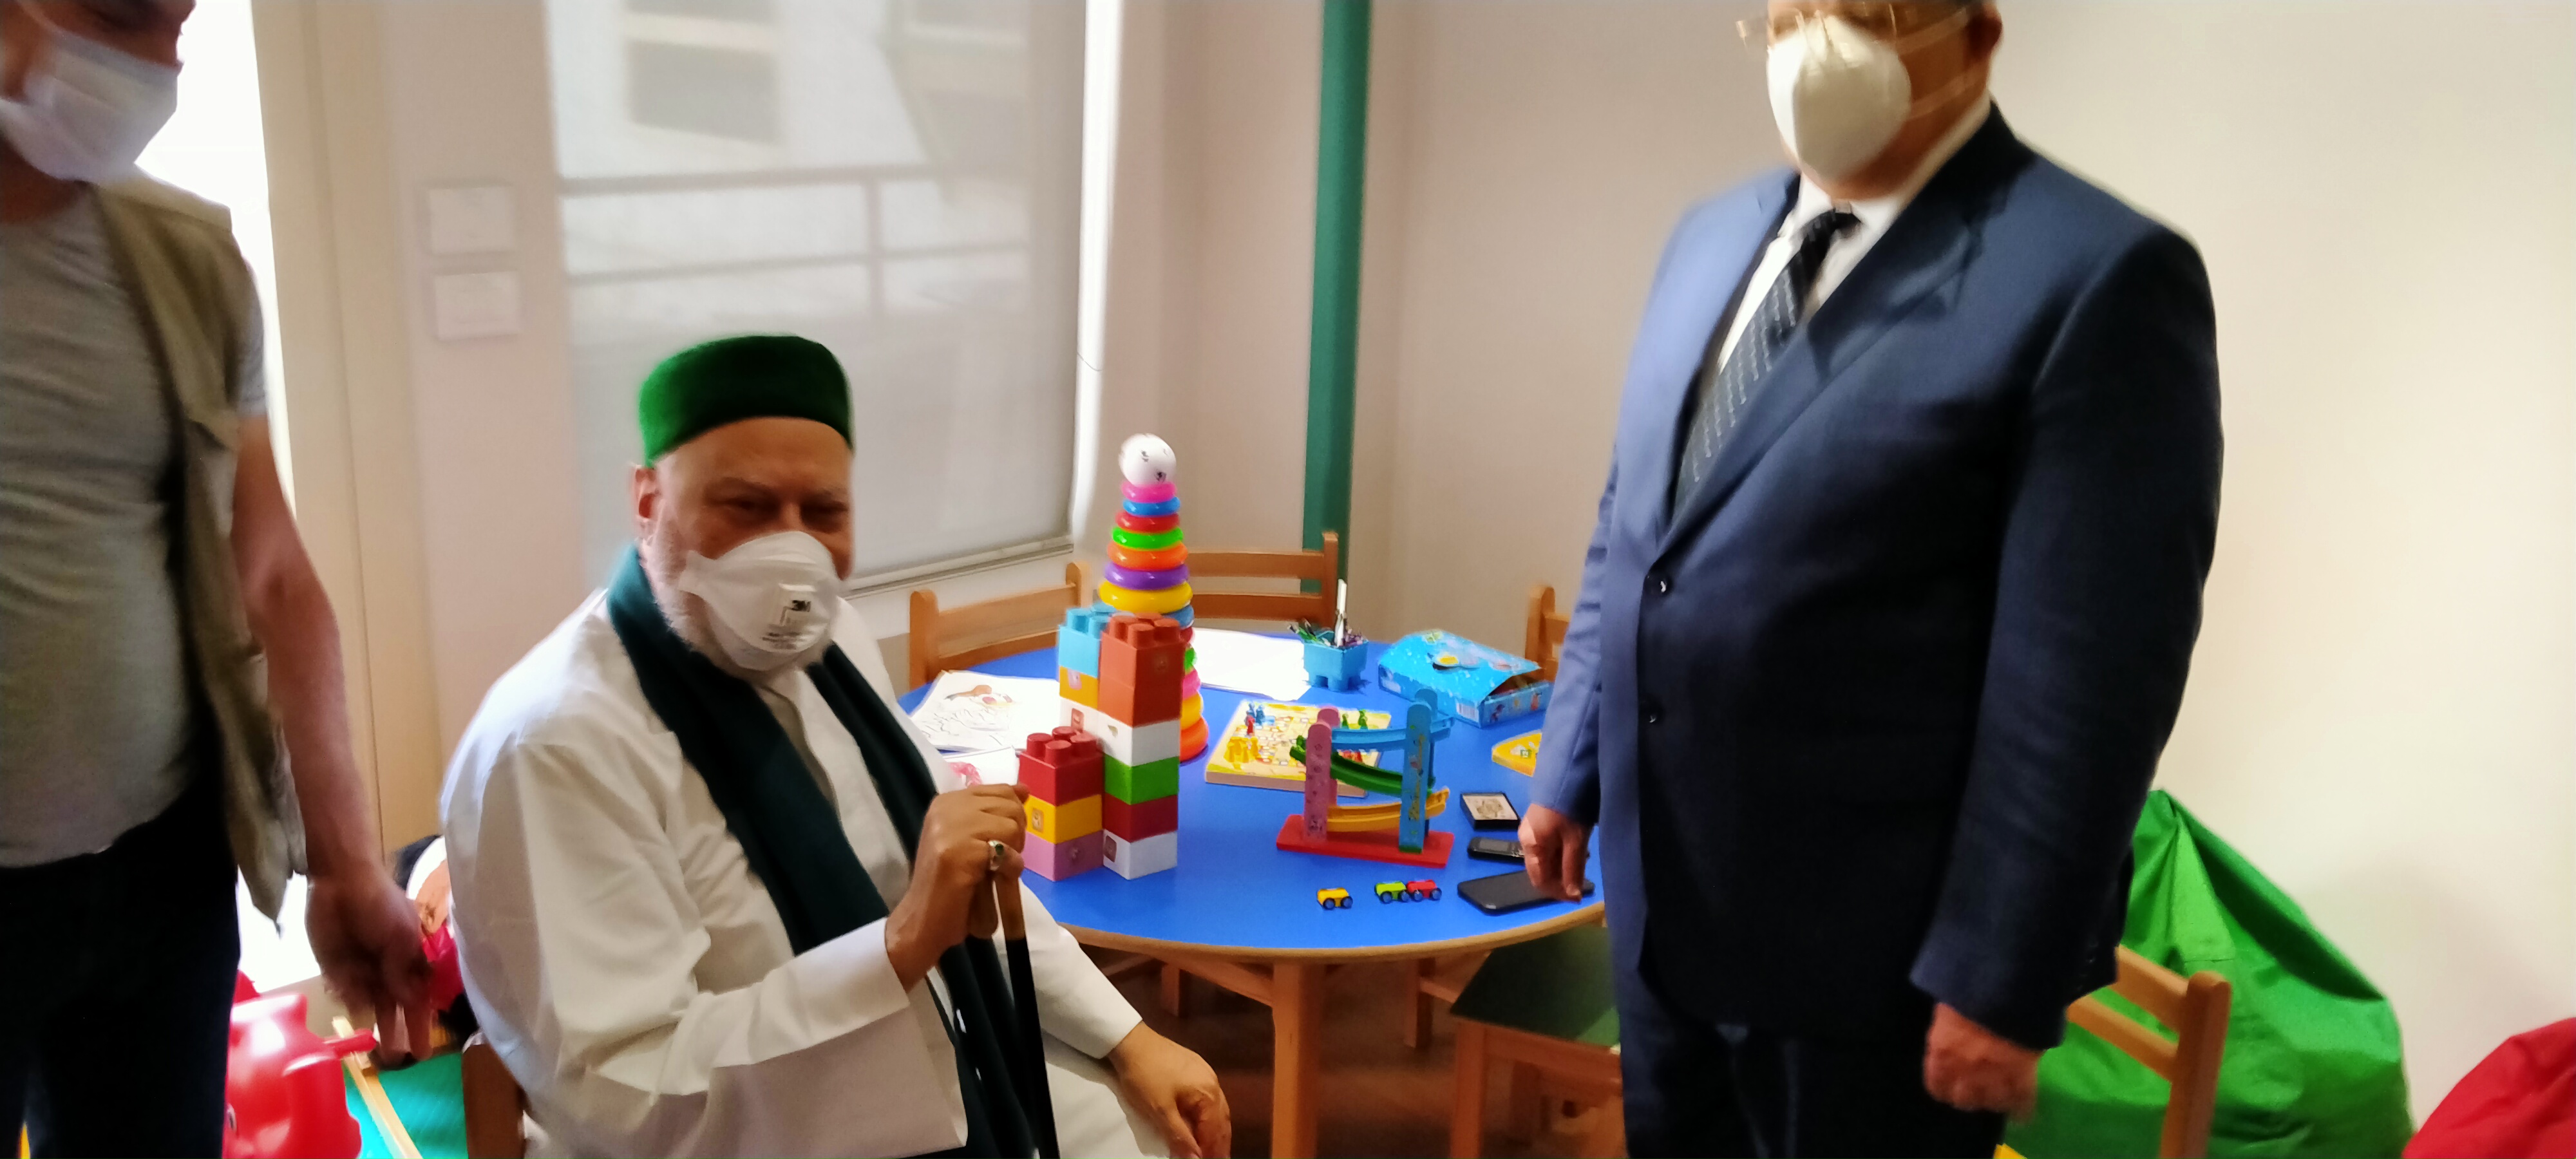 افتتاح وحدات طبية بمستشفيات أبو الريش المنيرة واليابانى (10)